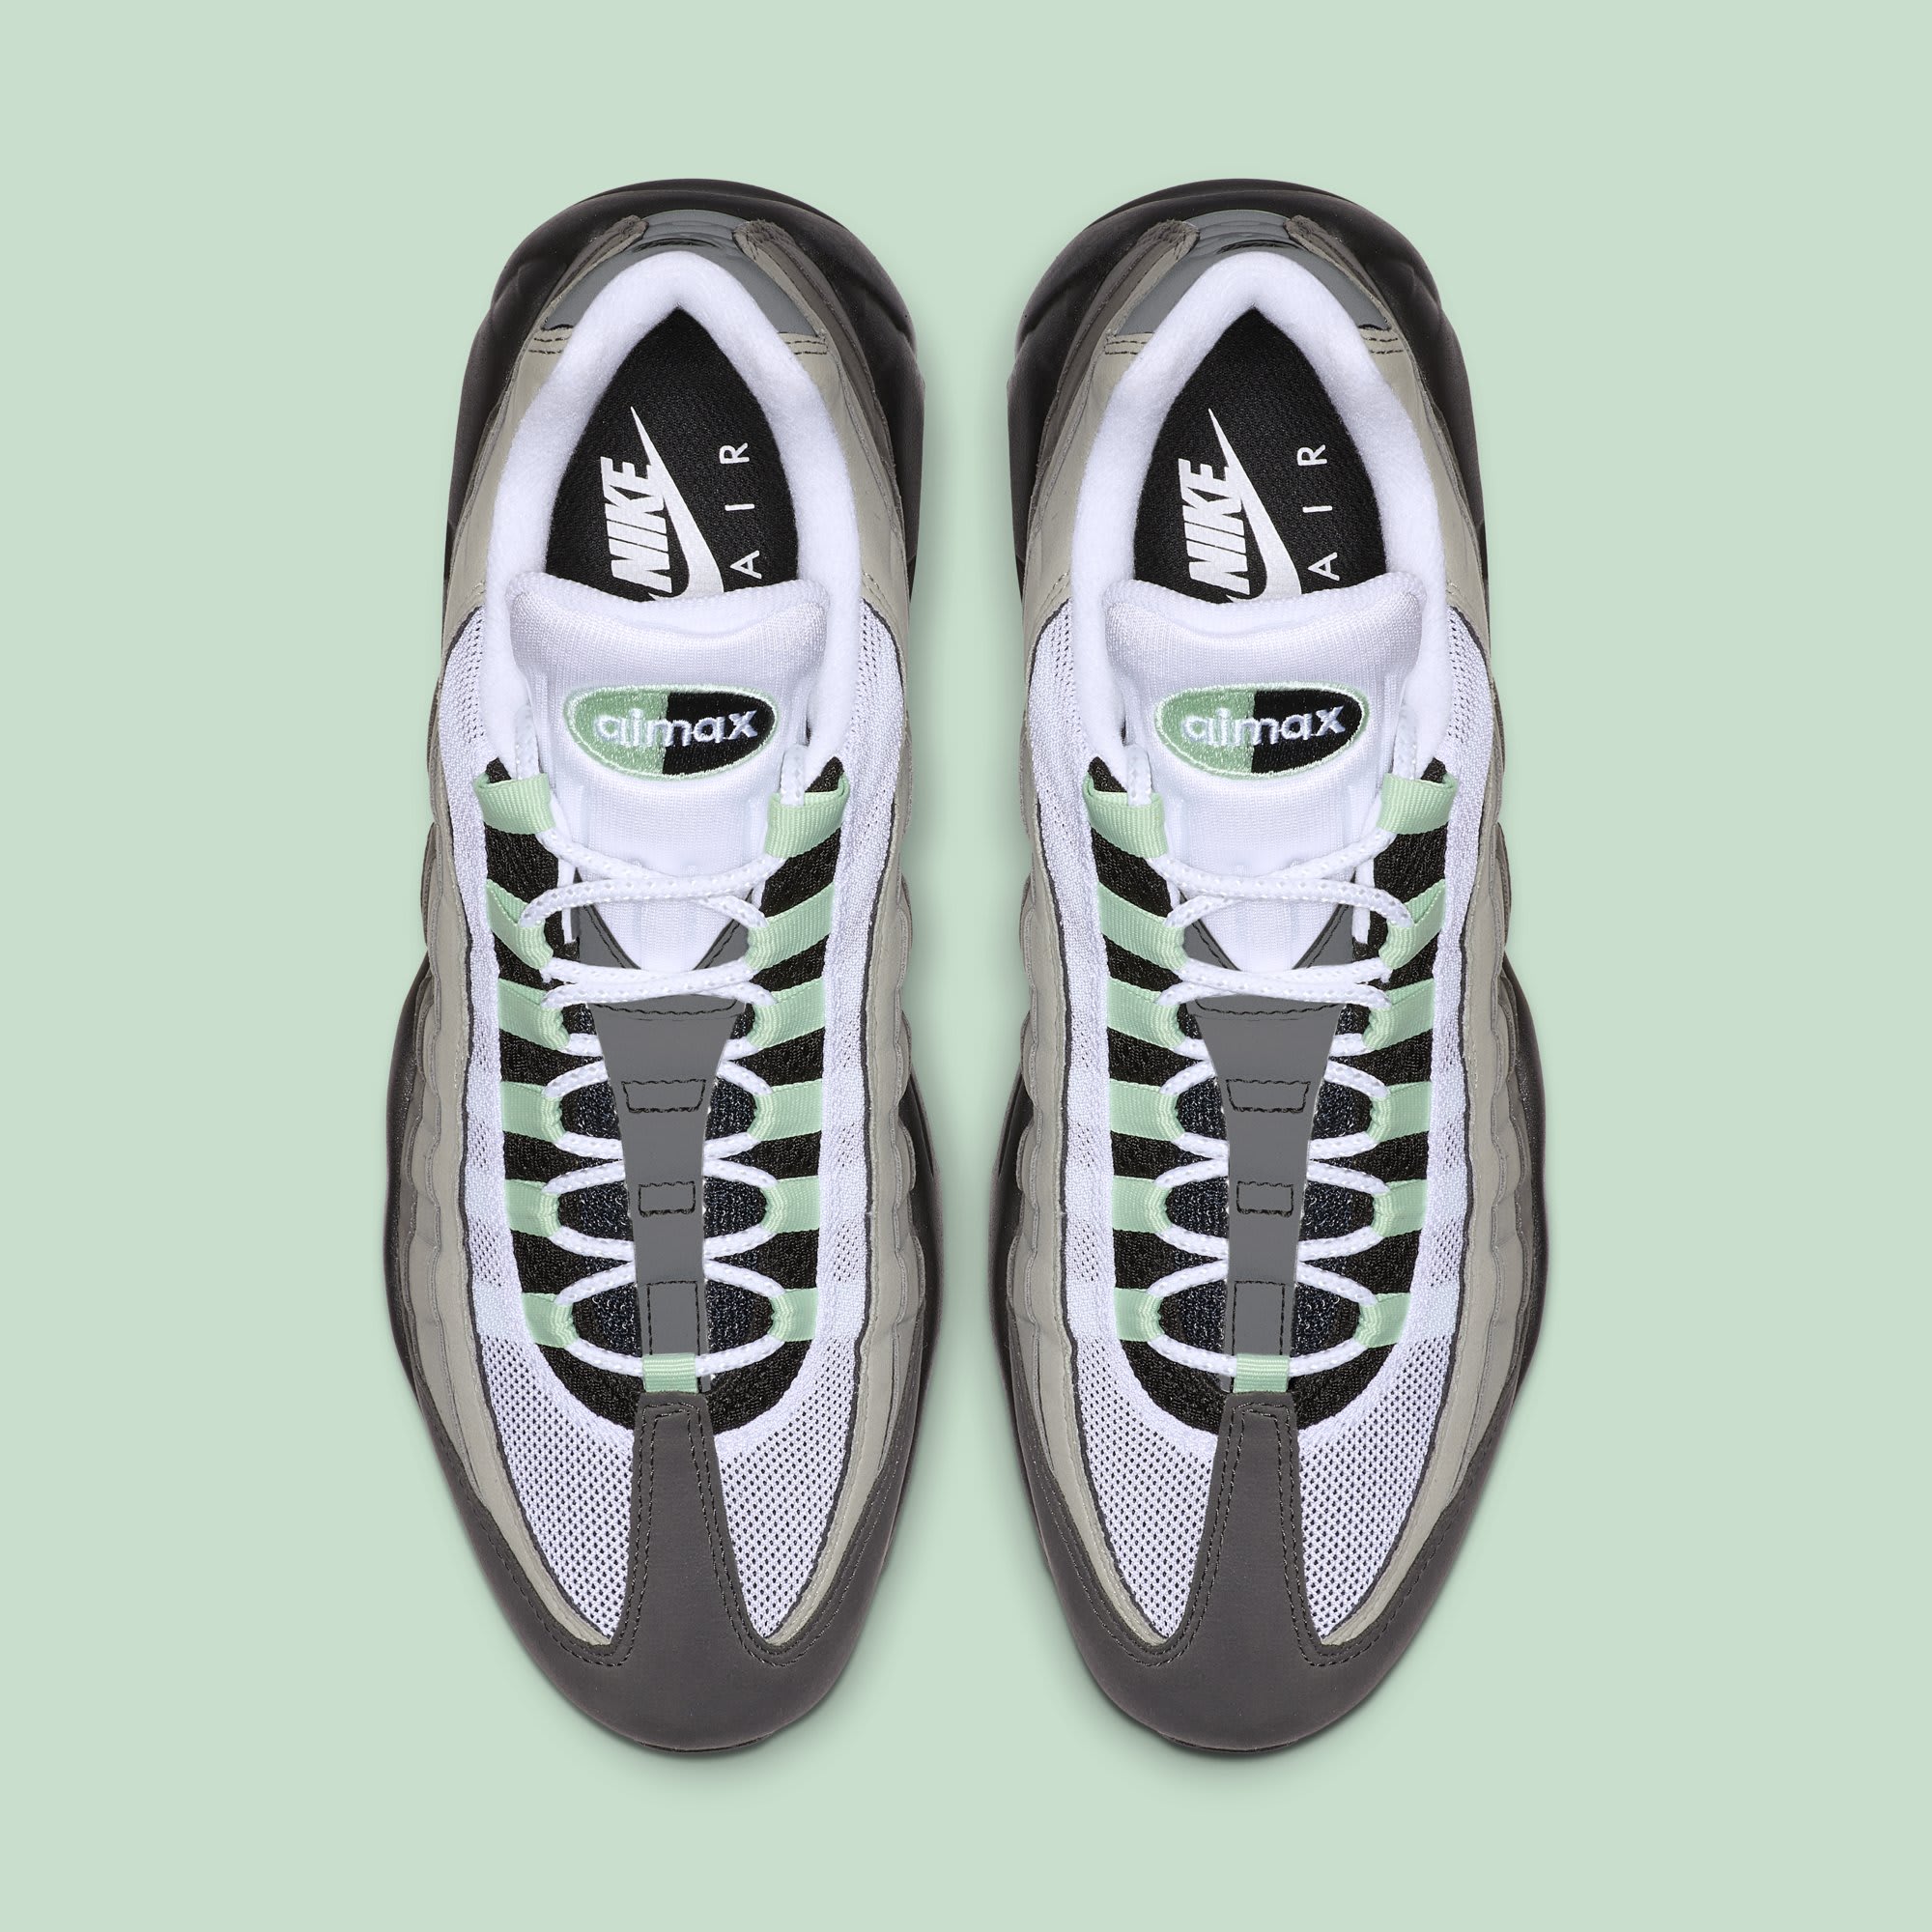 Drastisch Veranderlijk preambule This Nike Air Max 95 Looks Like an OG Colorway | Complex